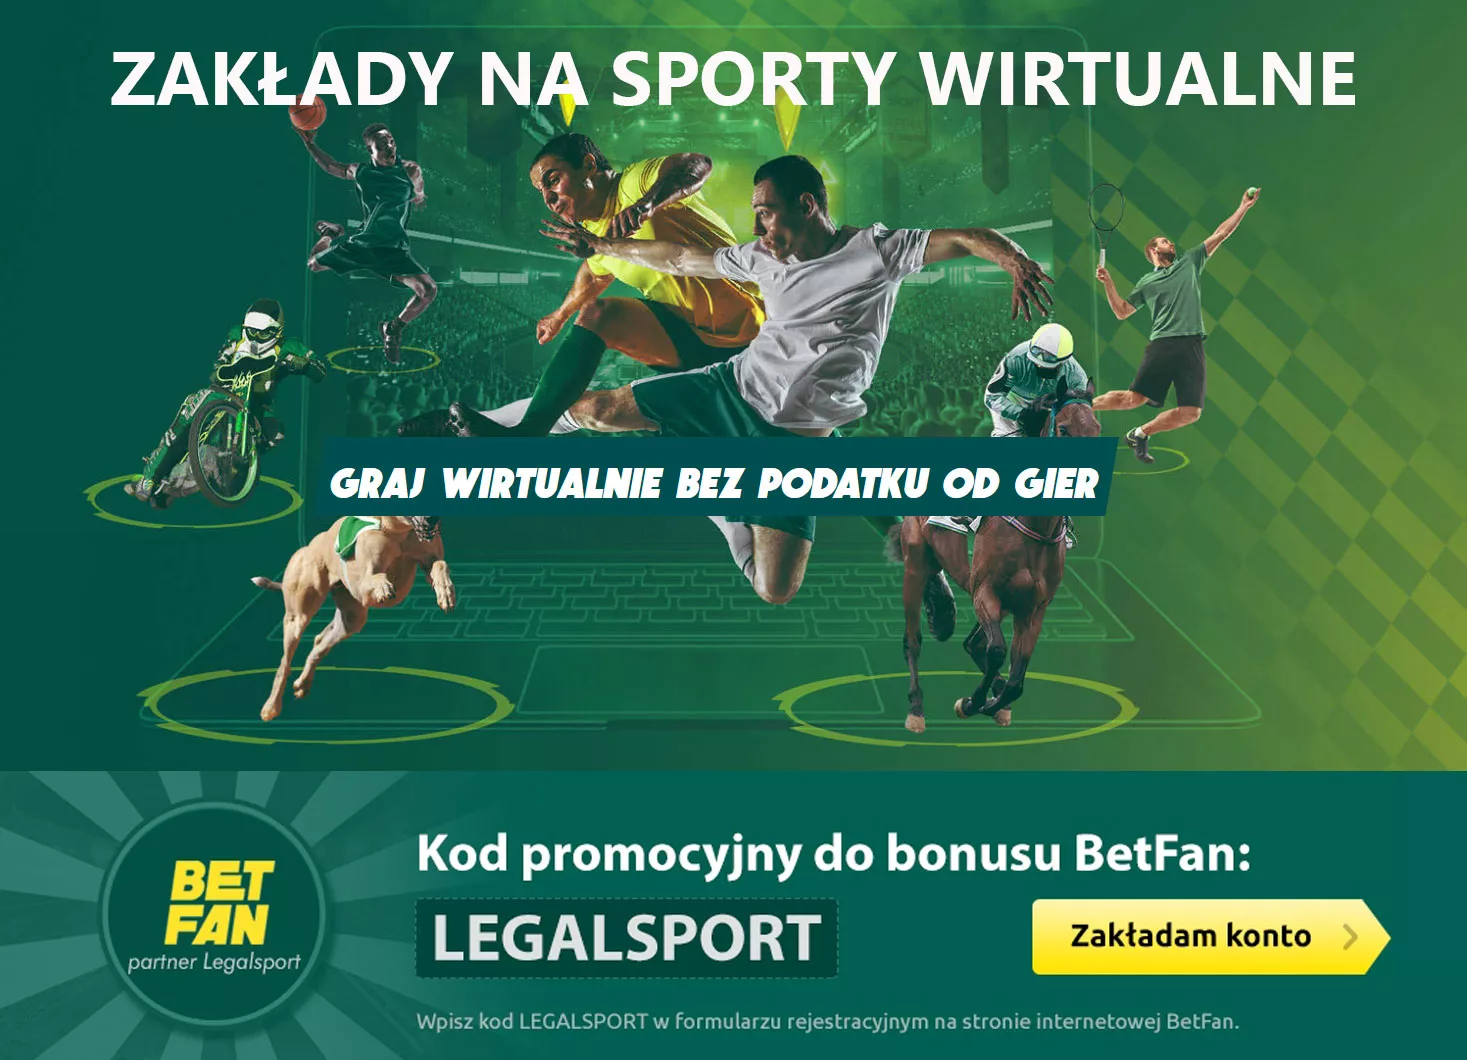 Sporty wirtualne w BETFAN